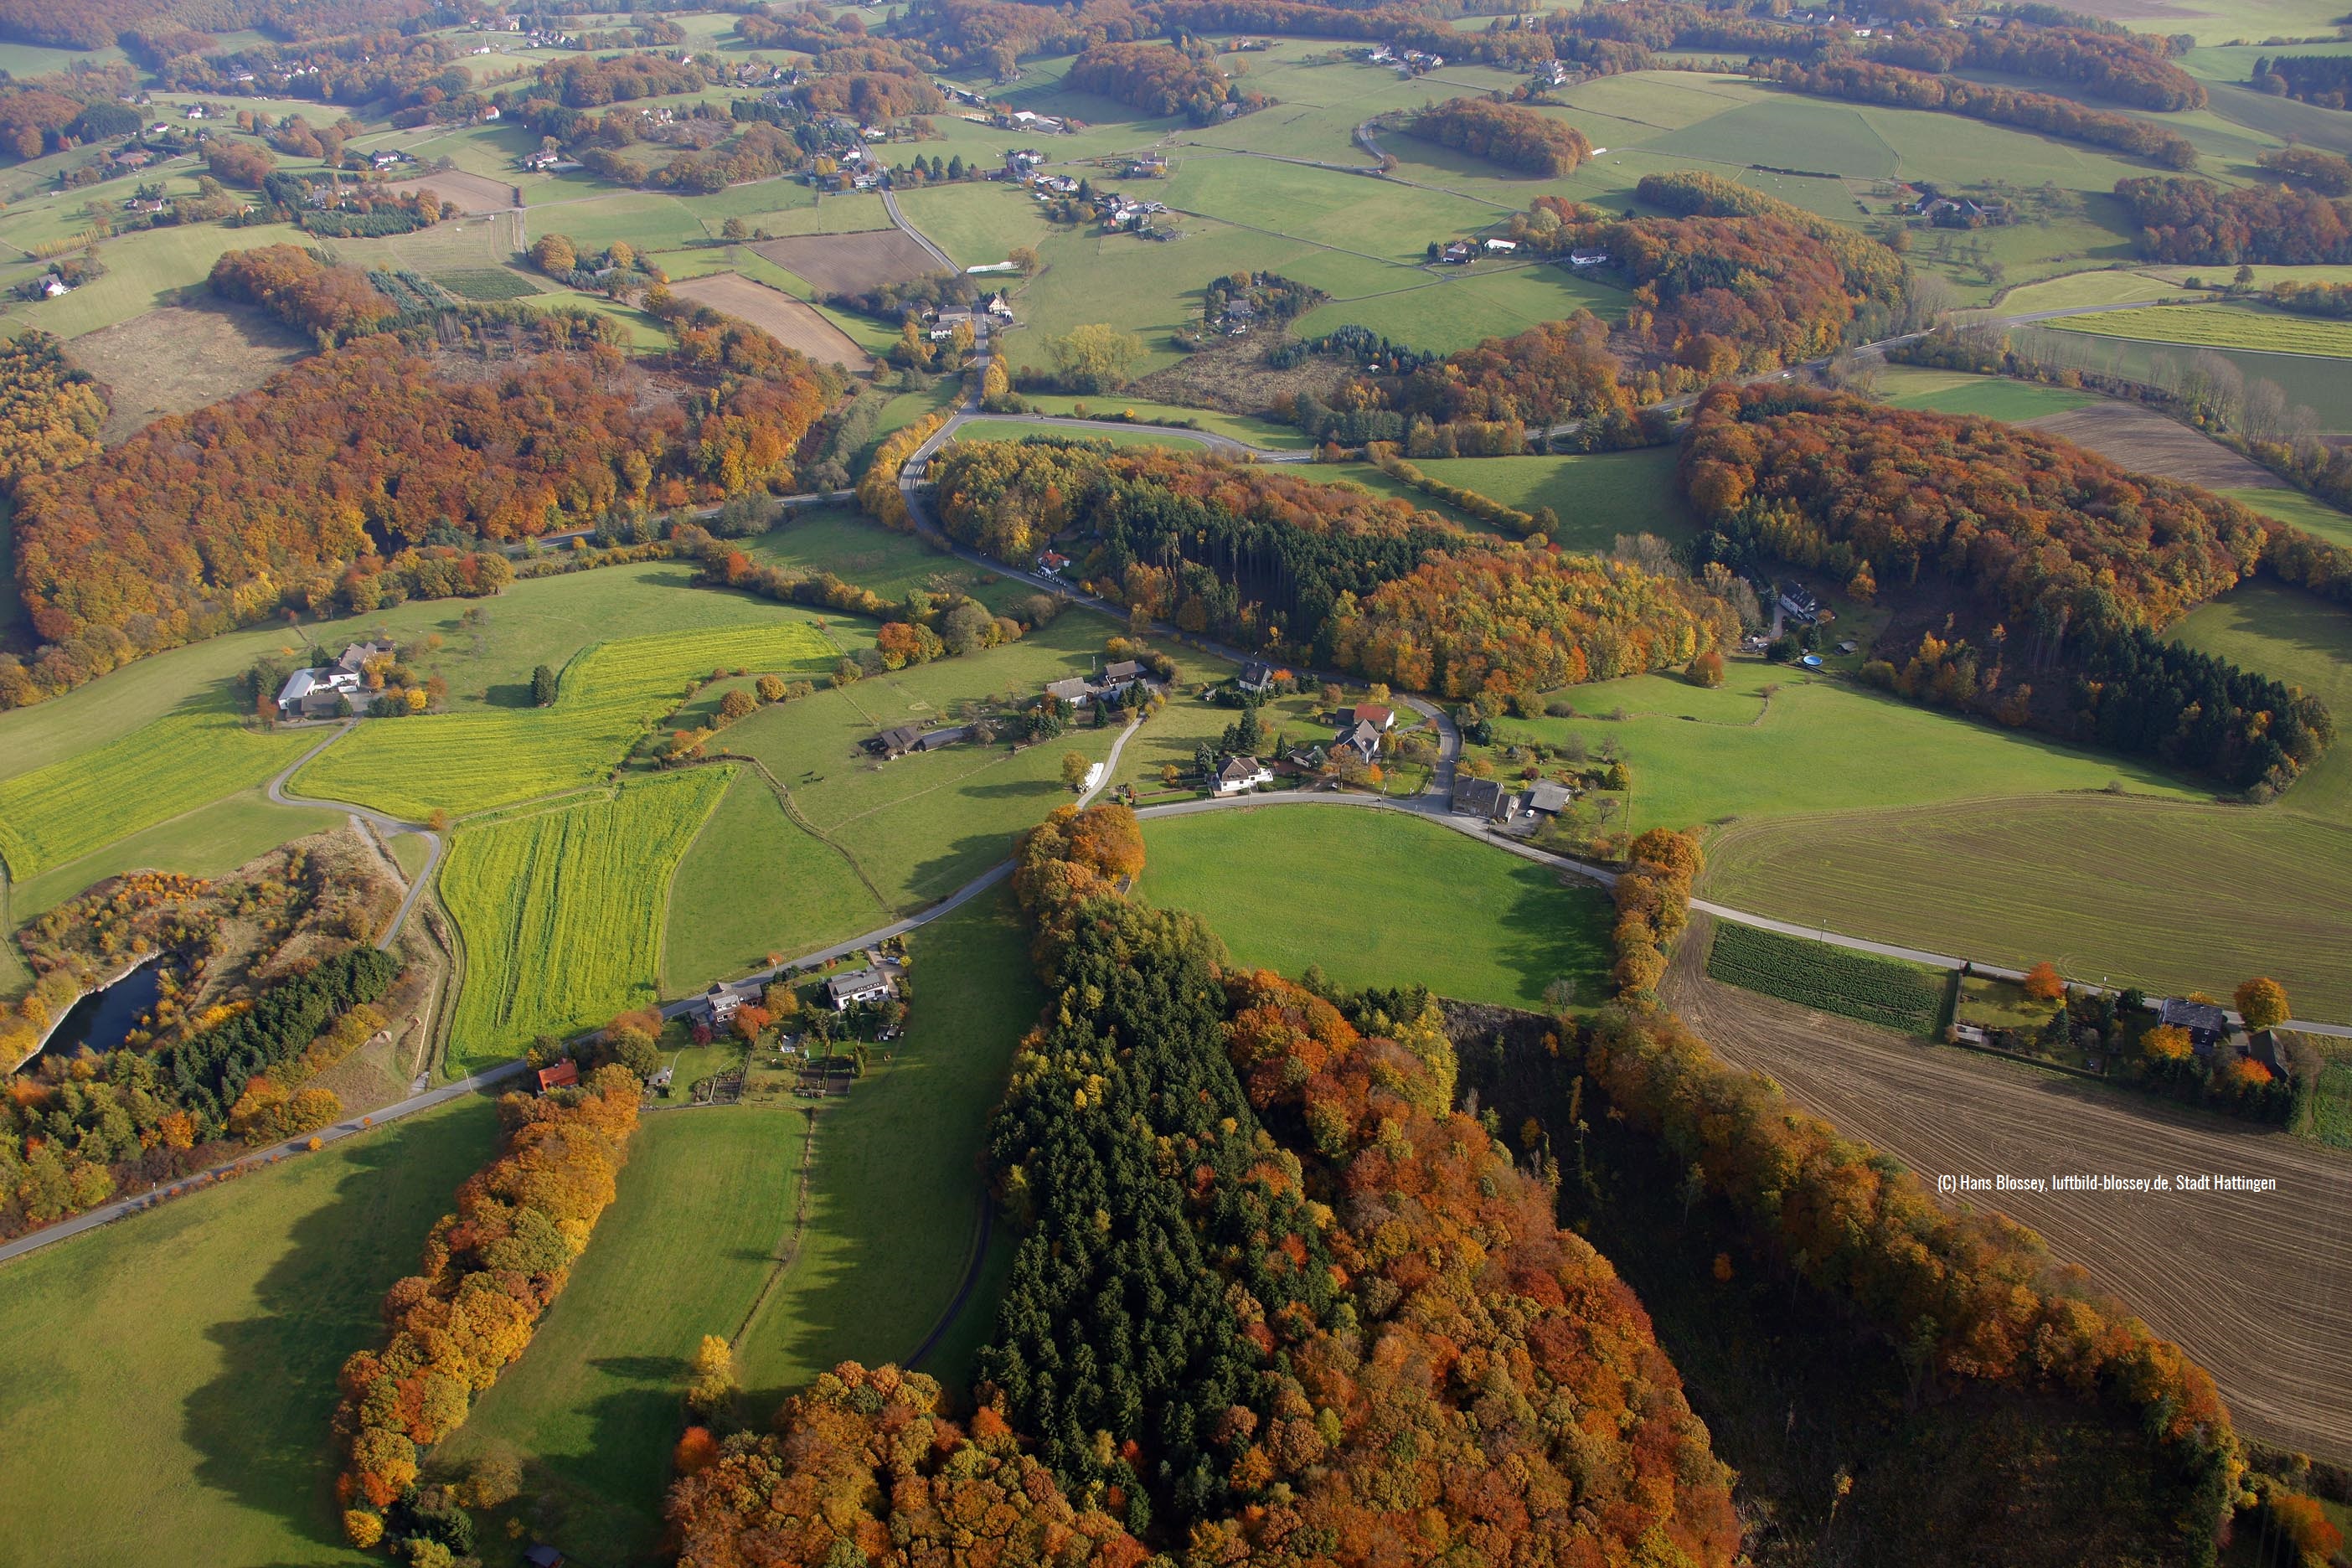 Luftbild von Hattingen mit grünen Wiesen und Feldern und herbstlichen Wäldern